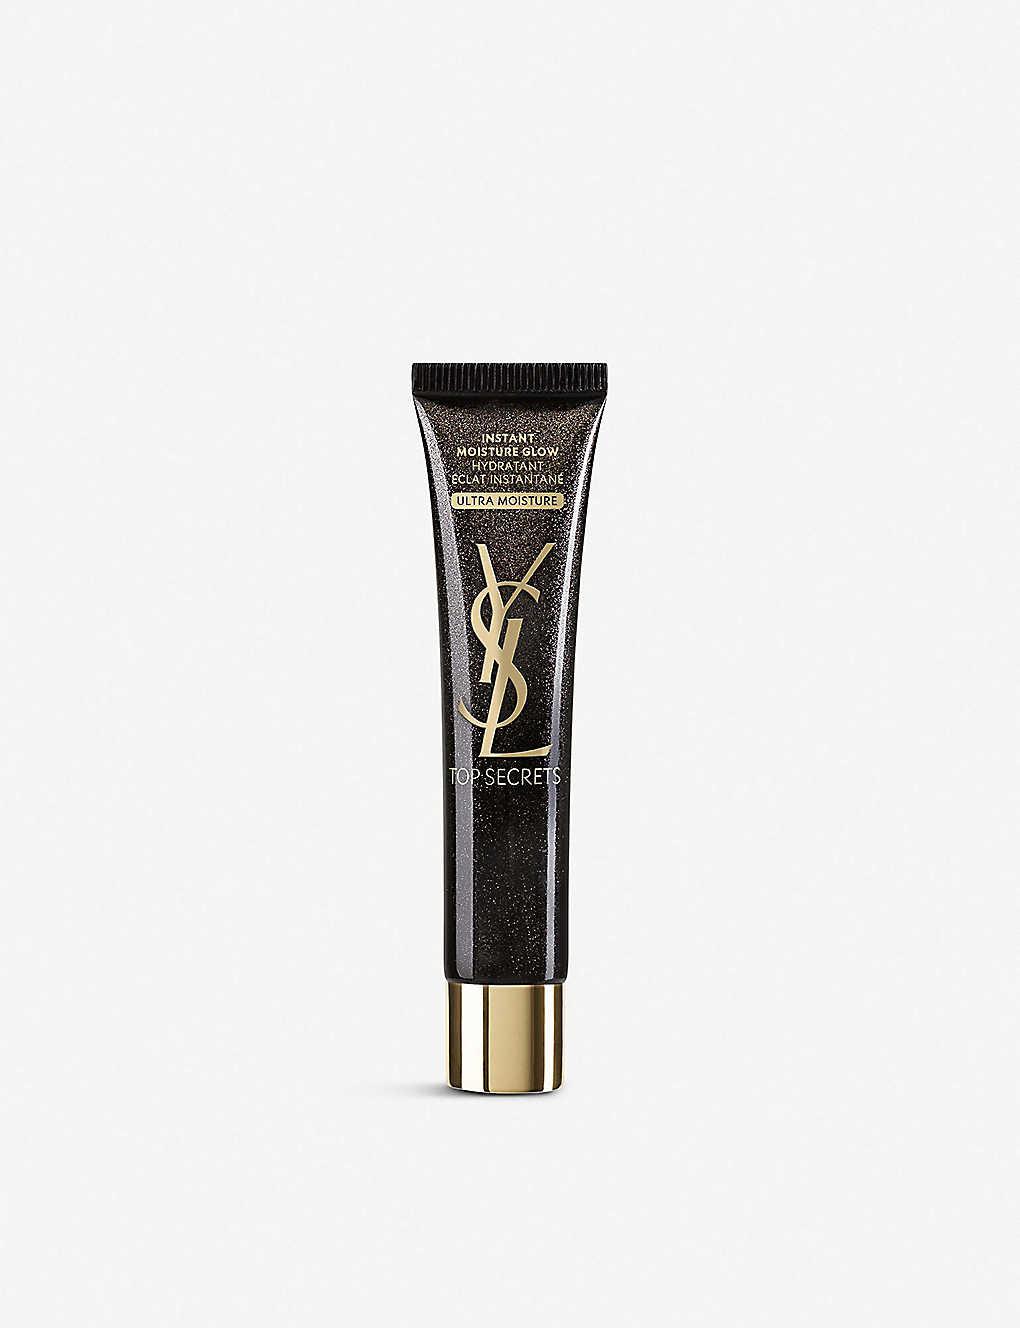 Yves Saint Laurent Top Secrets Ultra Face Moisture Glow 1 oz